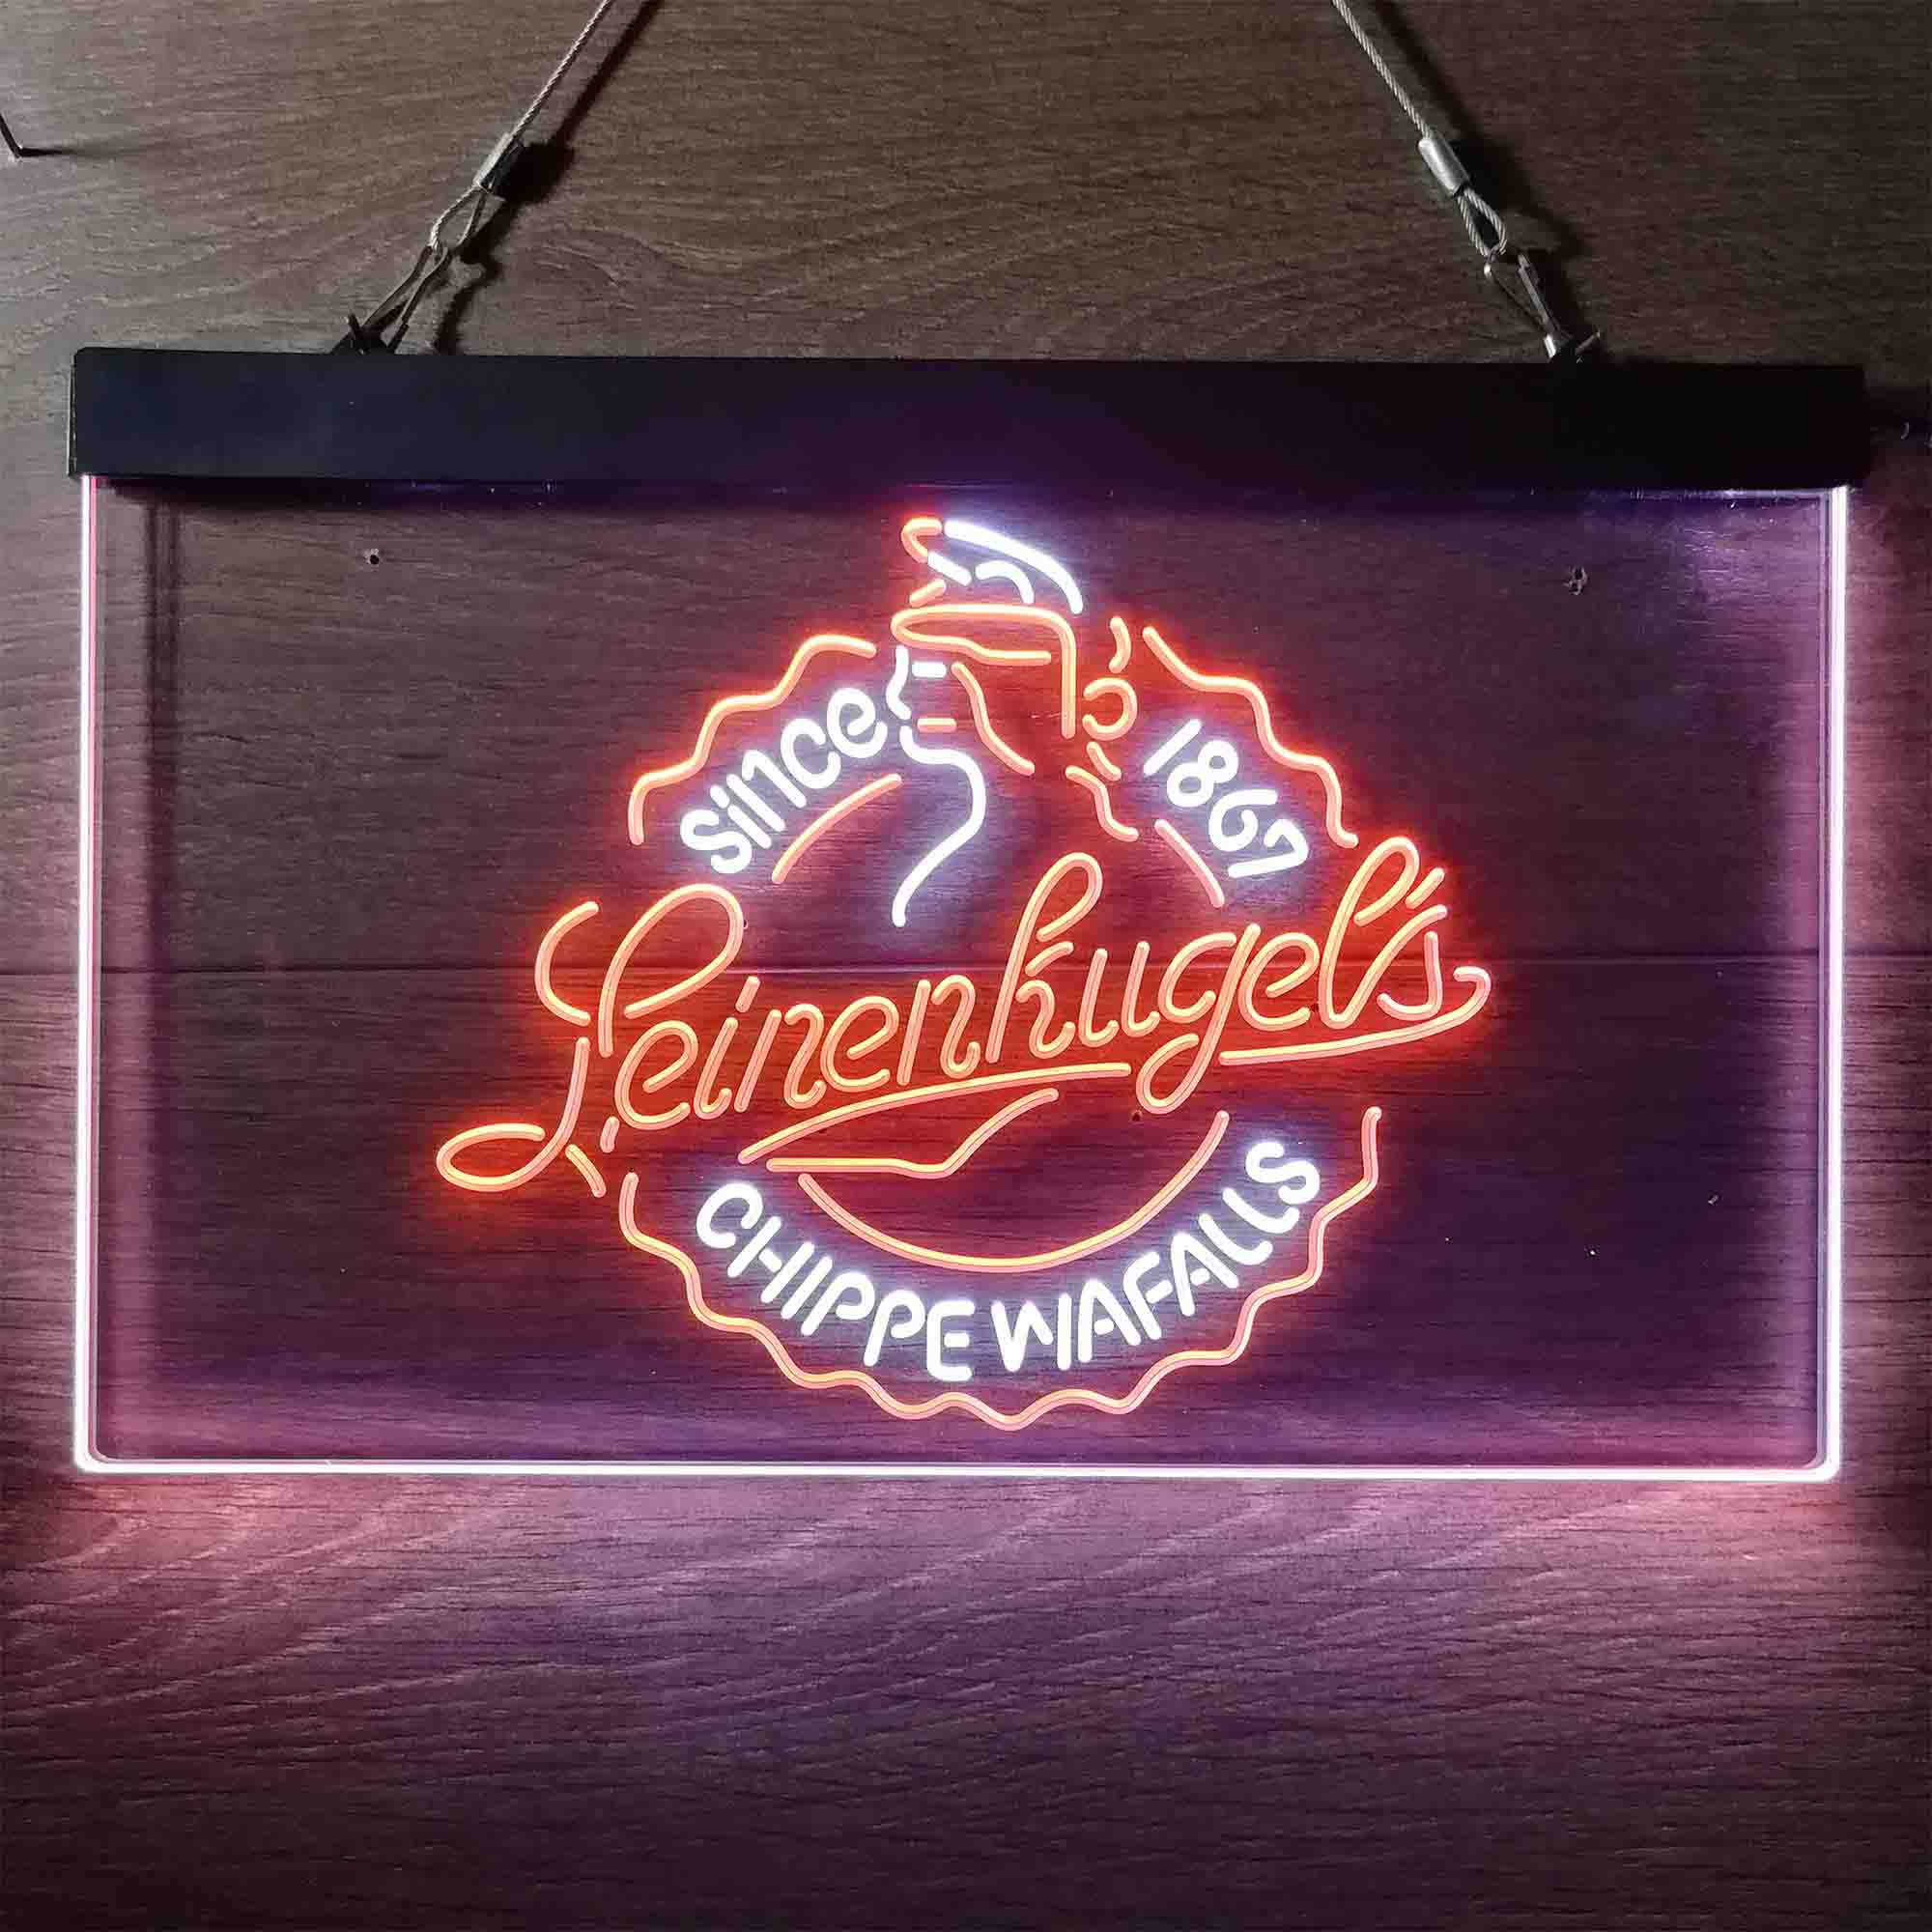 Leinenkugel Brewery Chippewa Falls Since 1867 Neon LED Sign